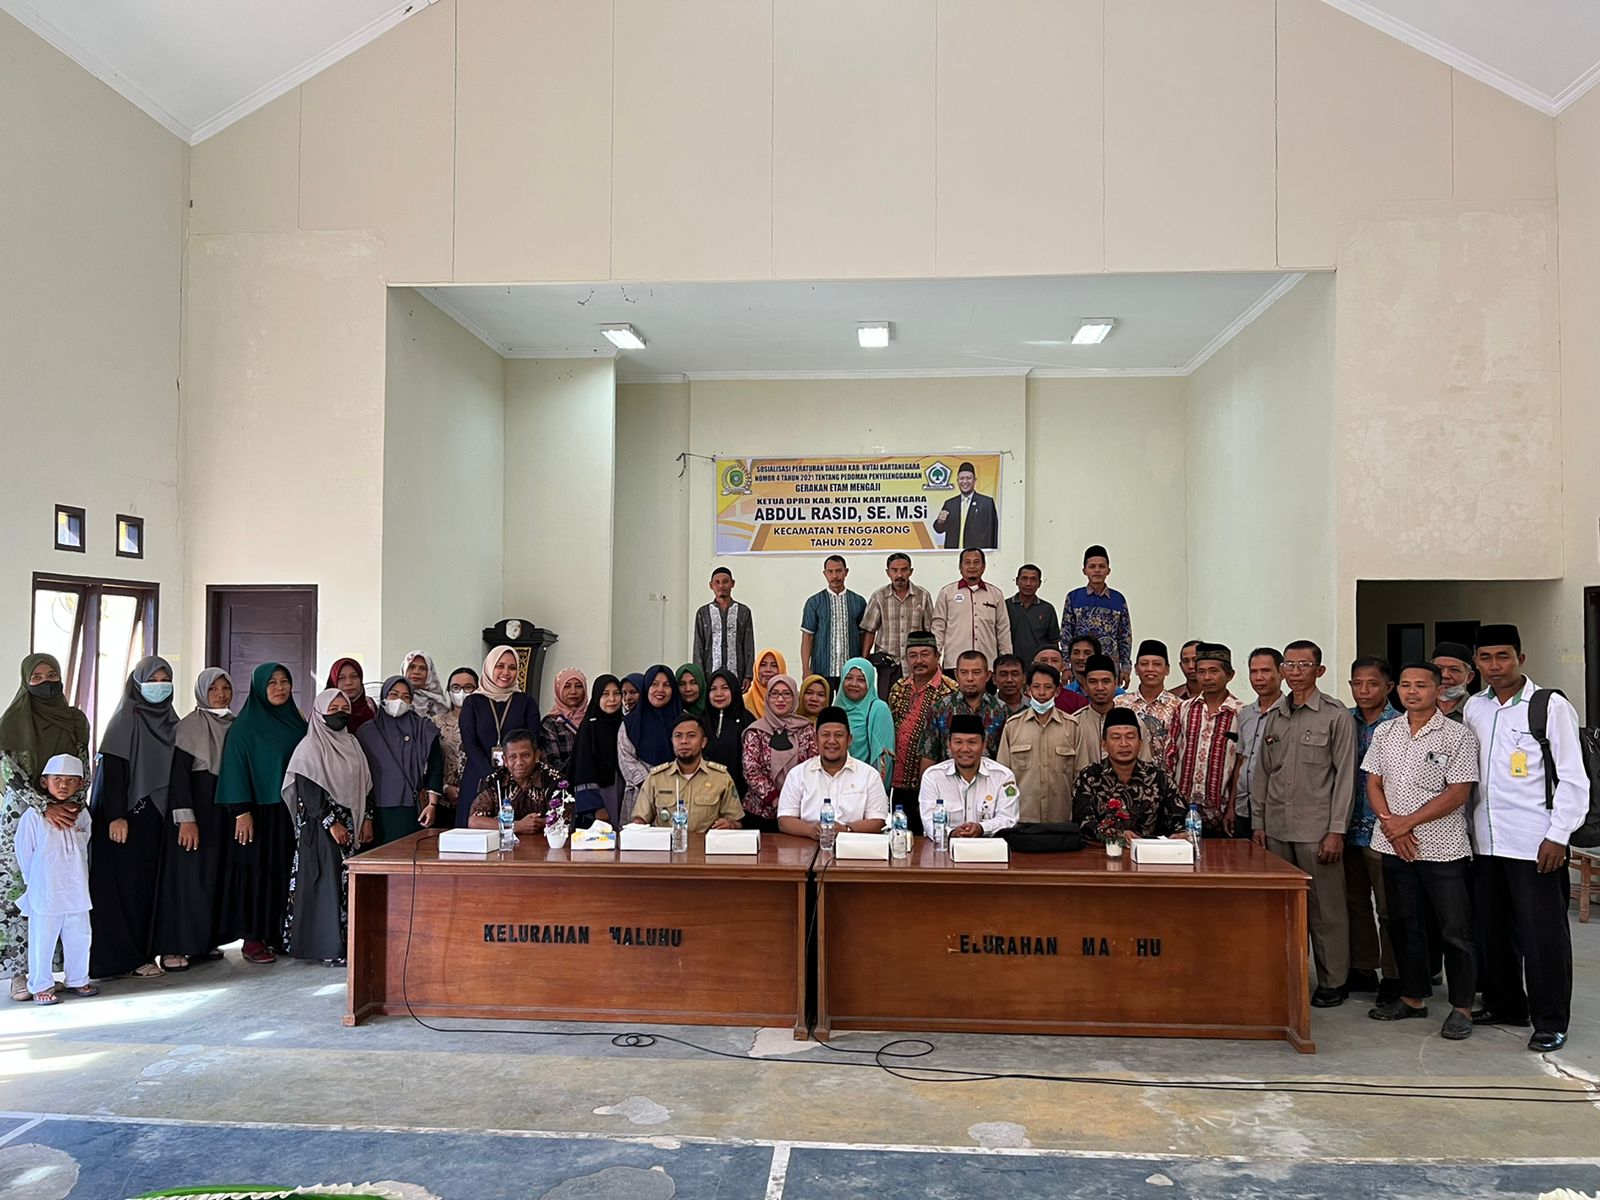   Ketua DPRD Kukar Abdul Rasid dan Anggota DPRD Lakukan Sosialisasi Perda Ke Dapil Masing-masing